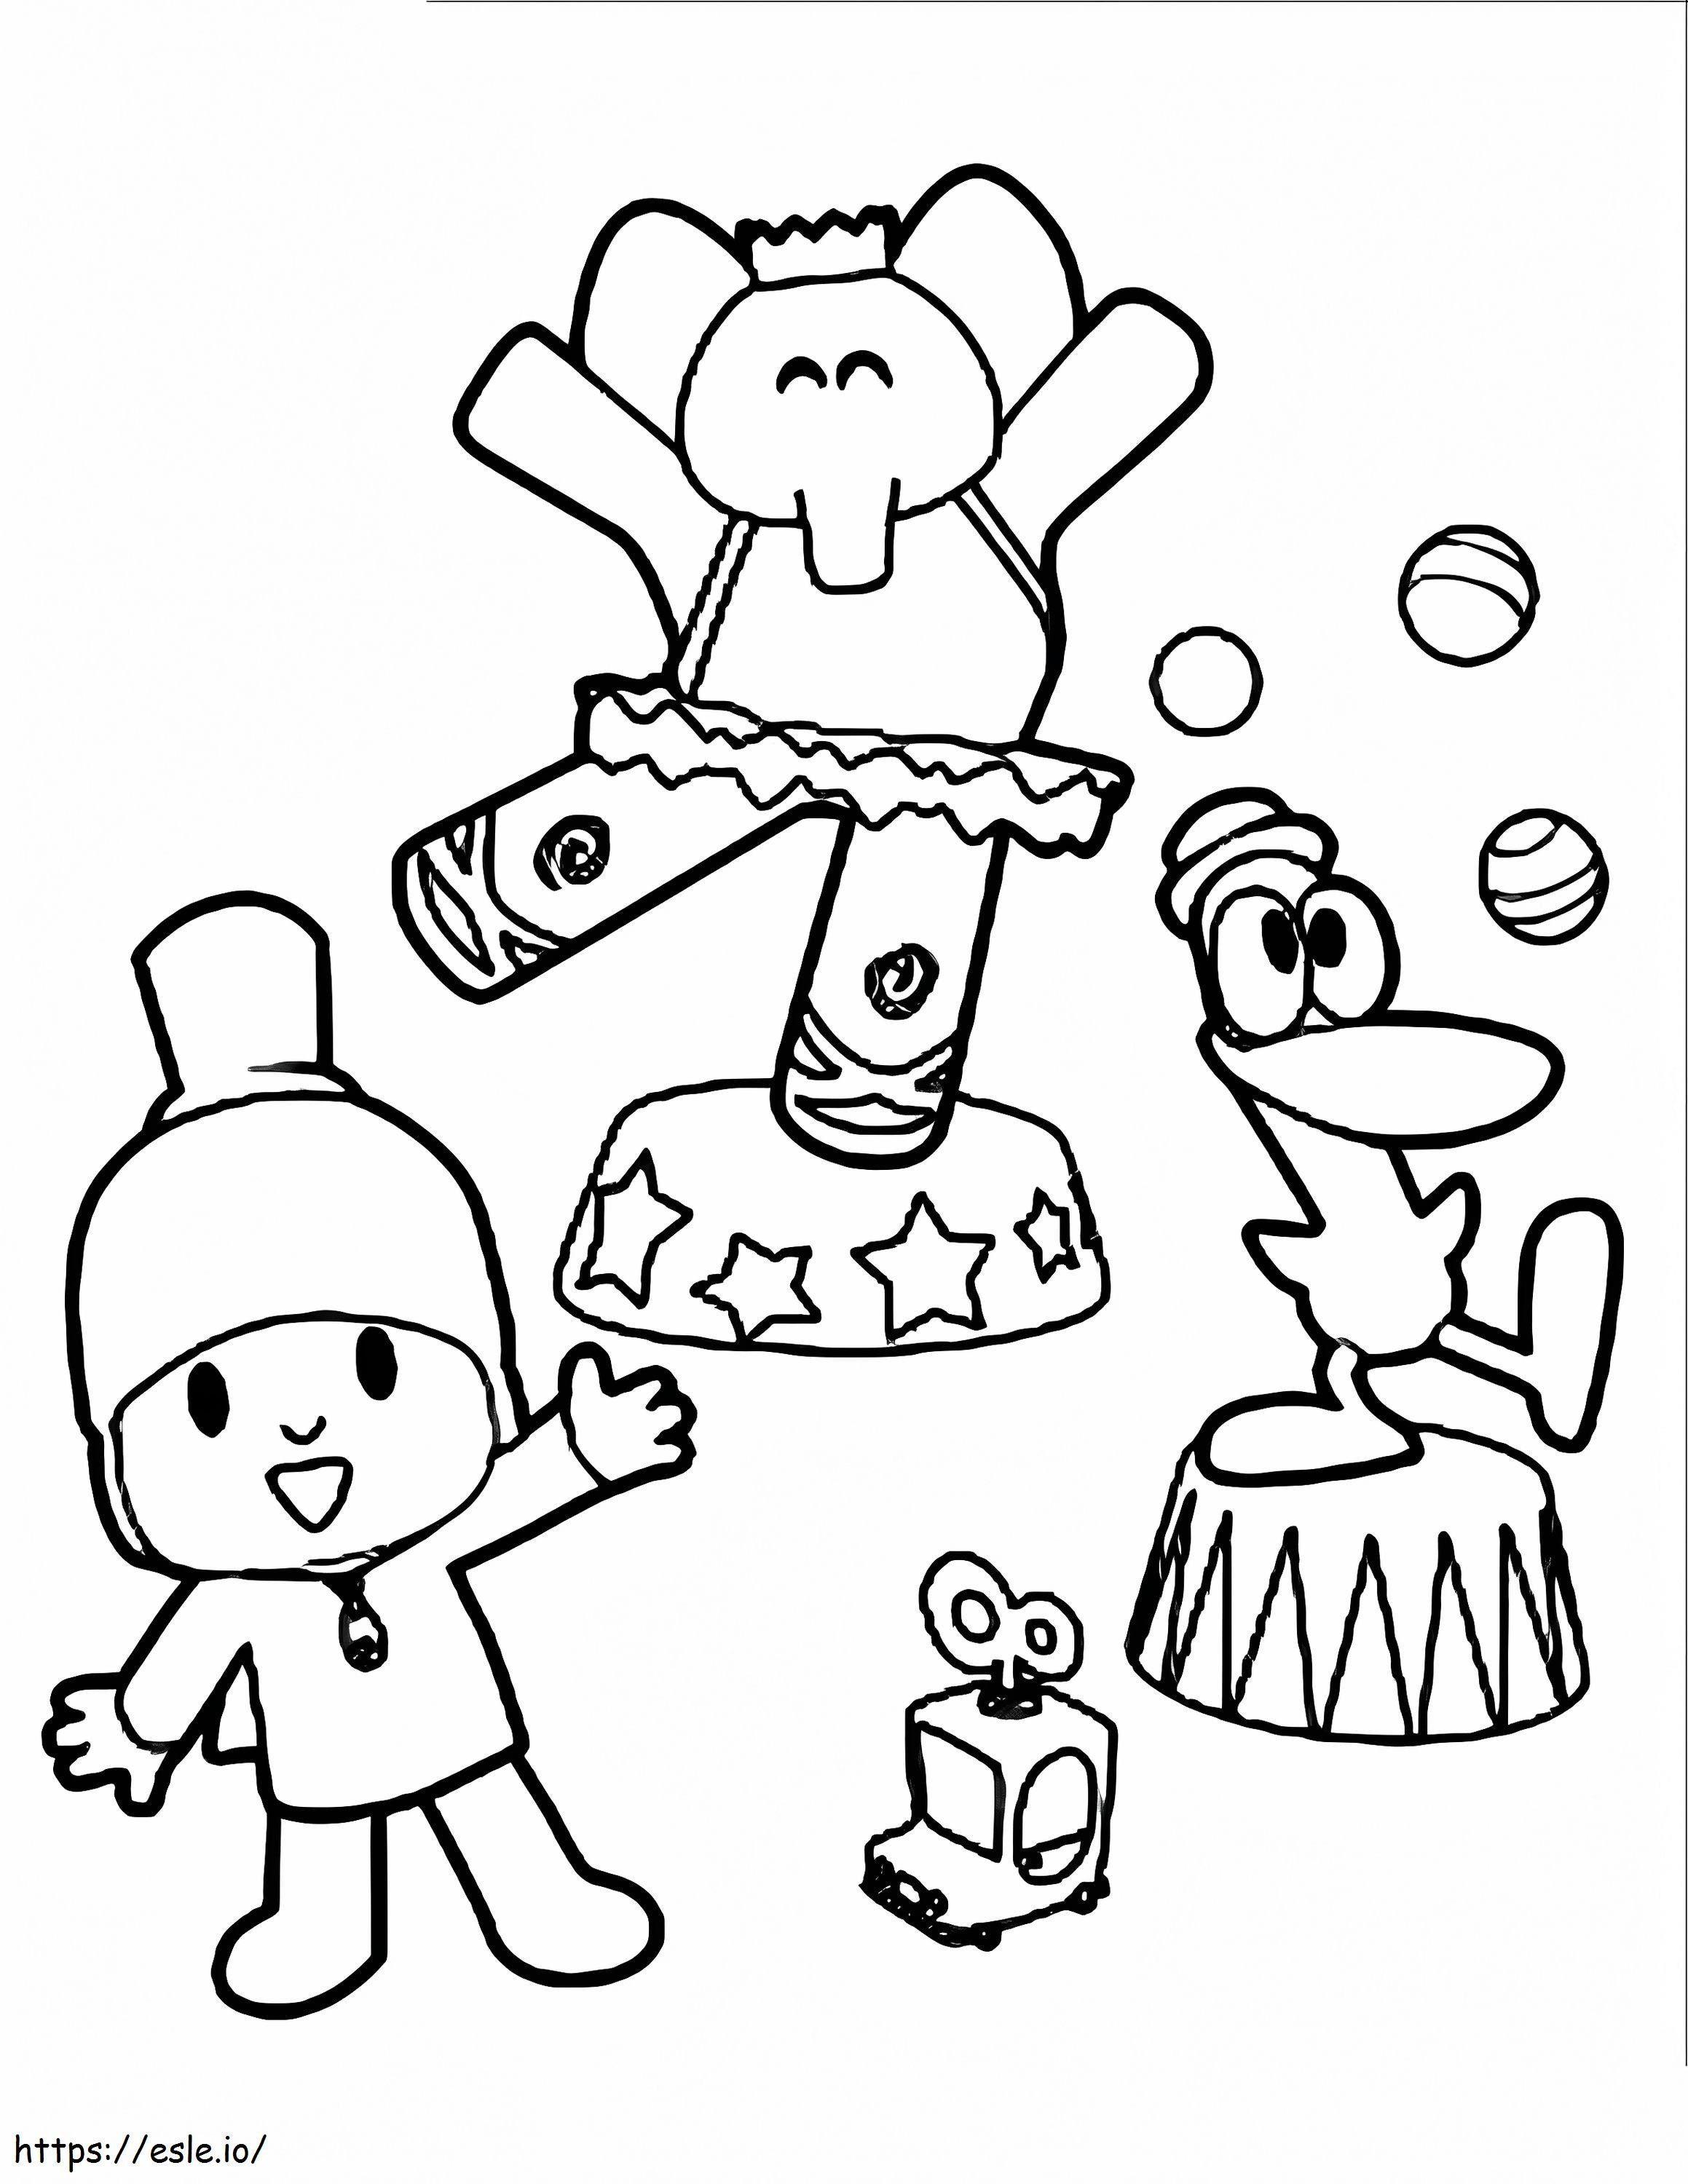 Show de circo Pocoyo e seus amigos para colorir